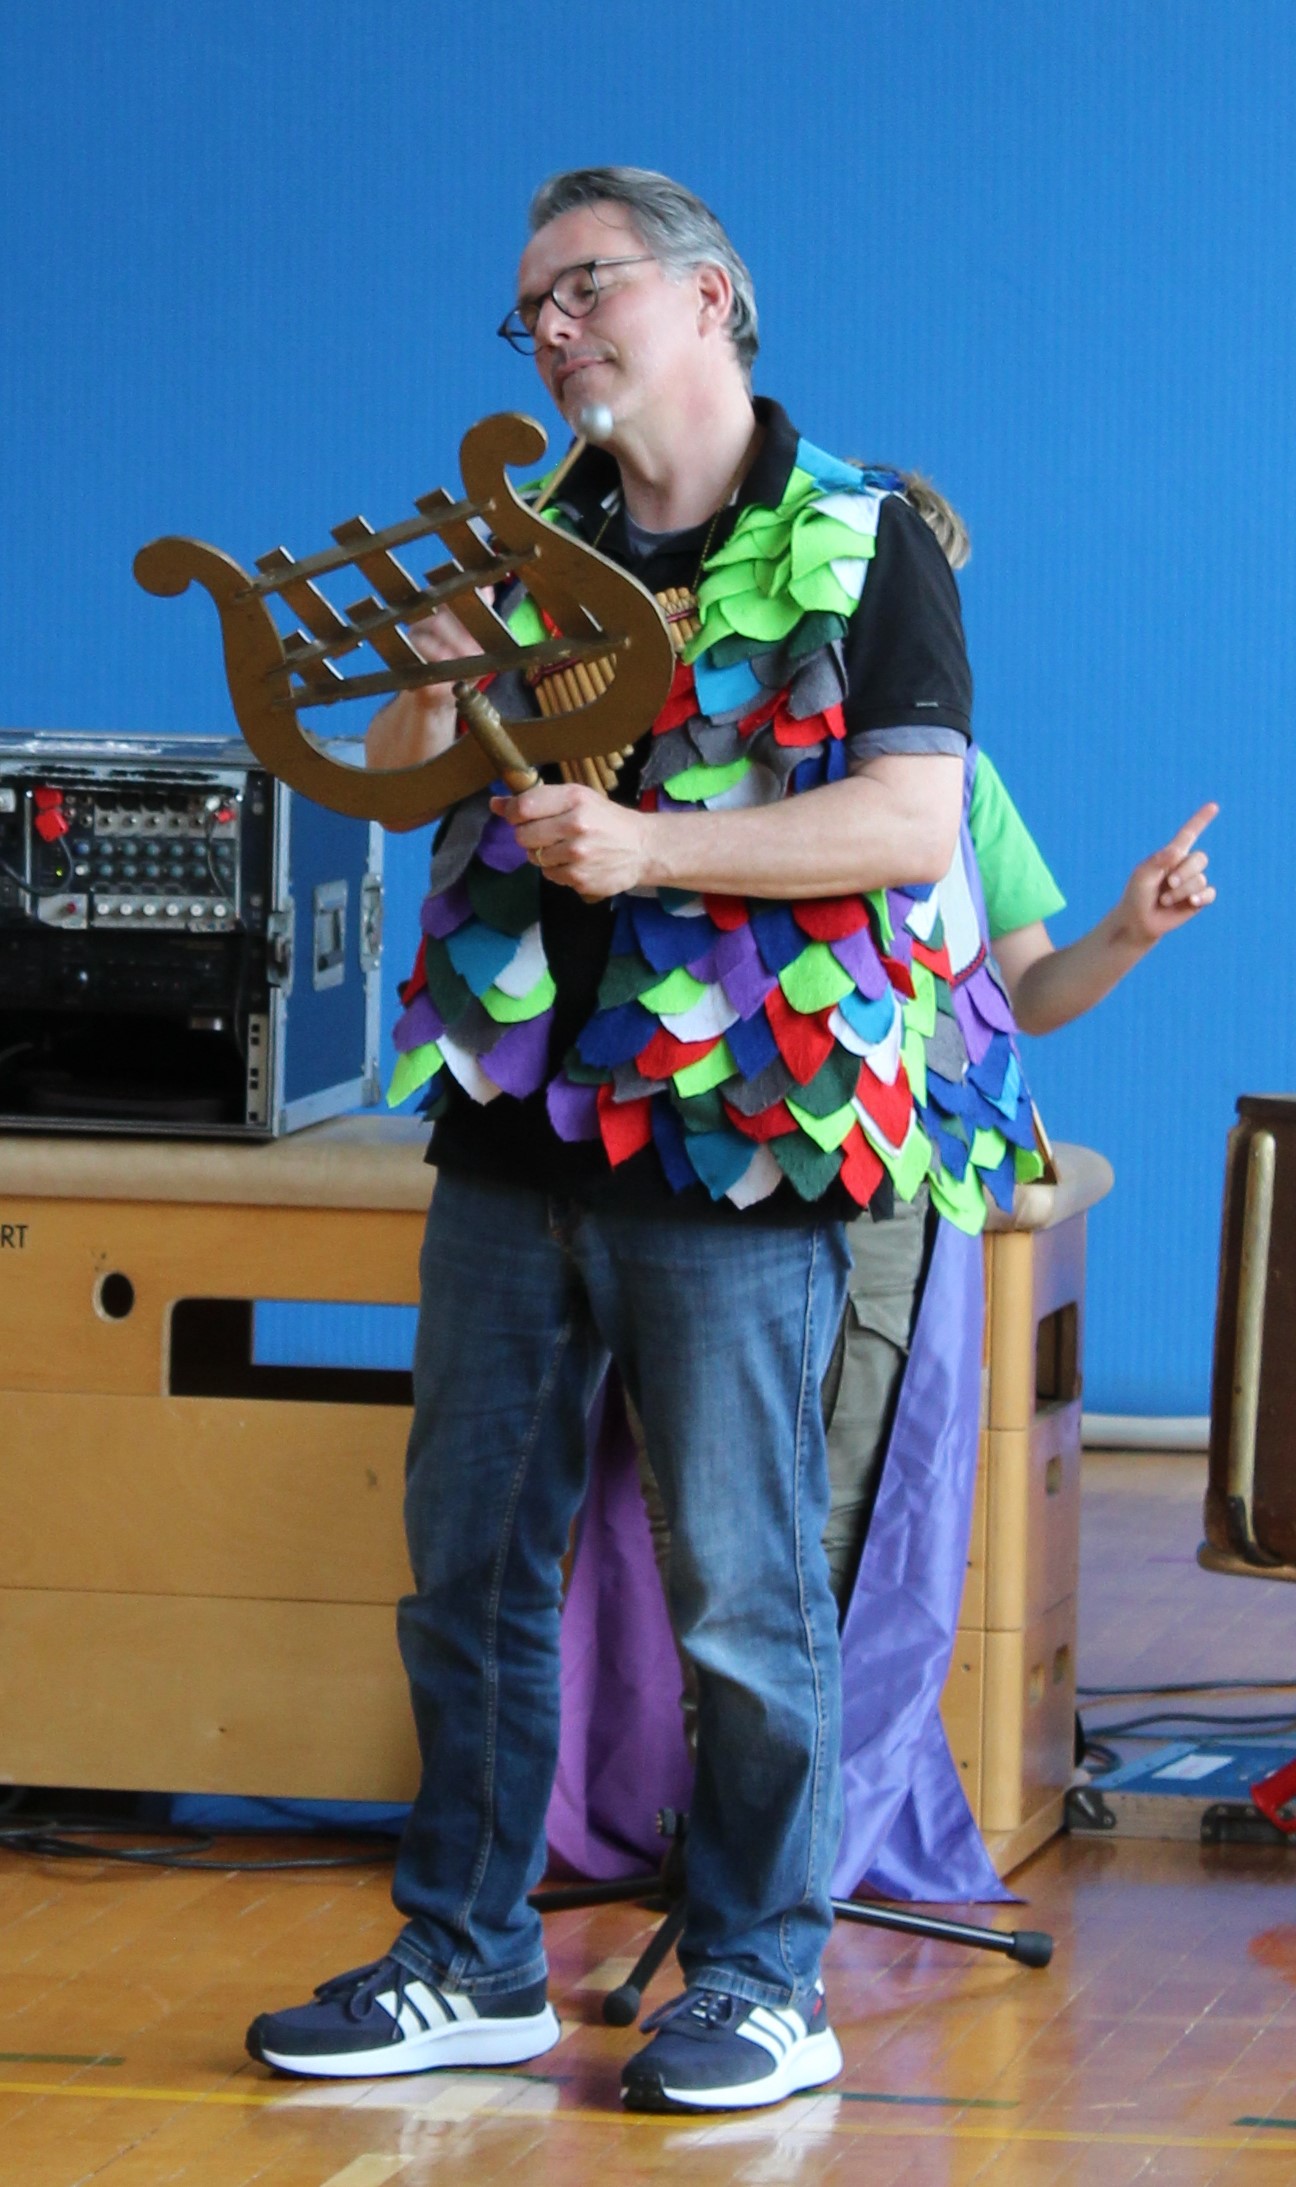 Der Schauspieler Papageno spielt auf seinem Zauberglockespiel.